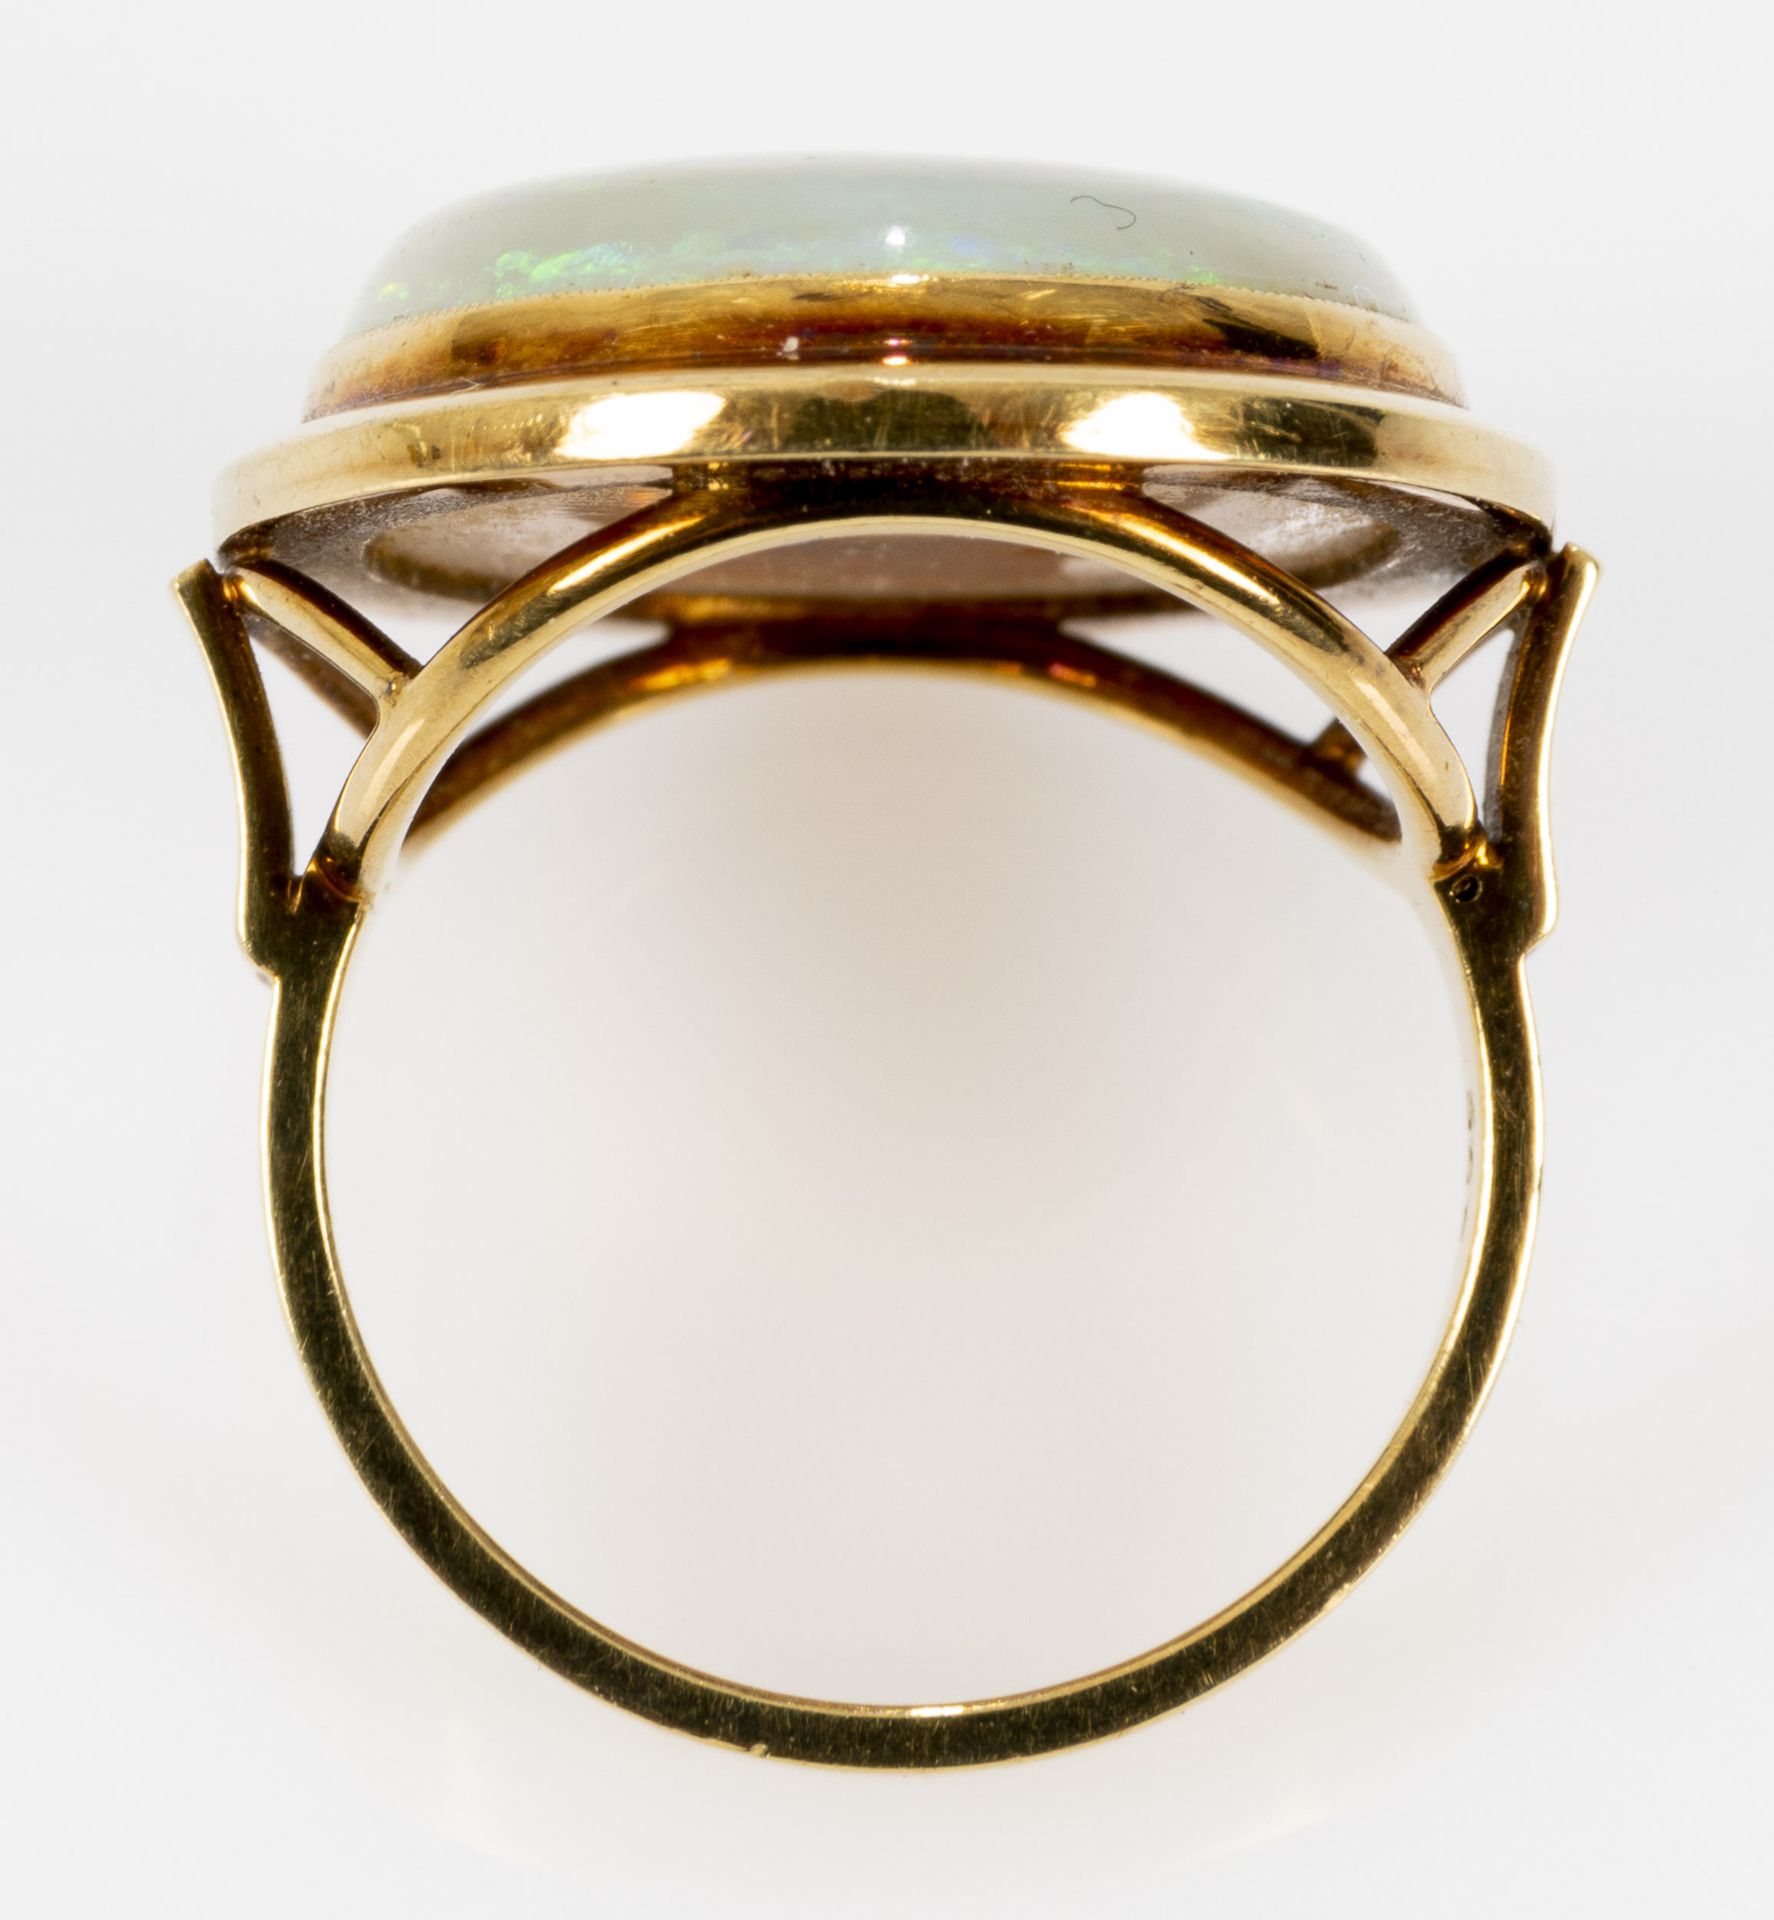 Großer Opal-Ring, 14 k Gelbgoldfassung, der Ringkopf mit eingefasstem ca. 18 x 22 mm großen Opal-Ca - Image 5 of 7